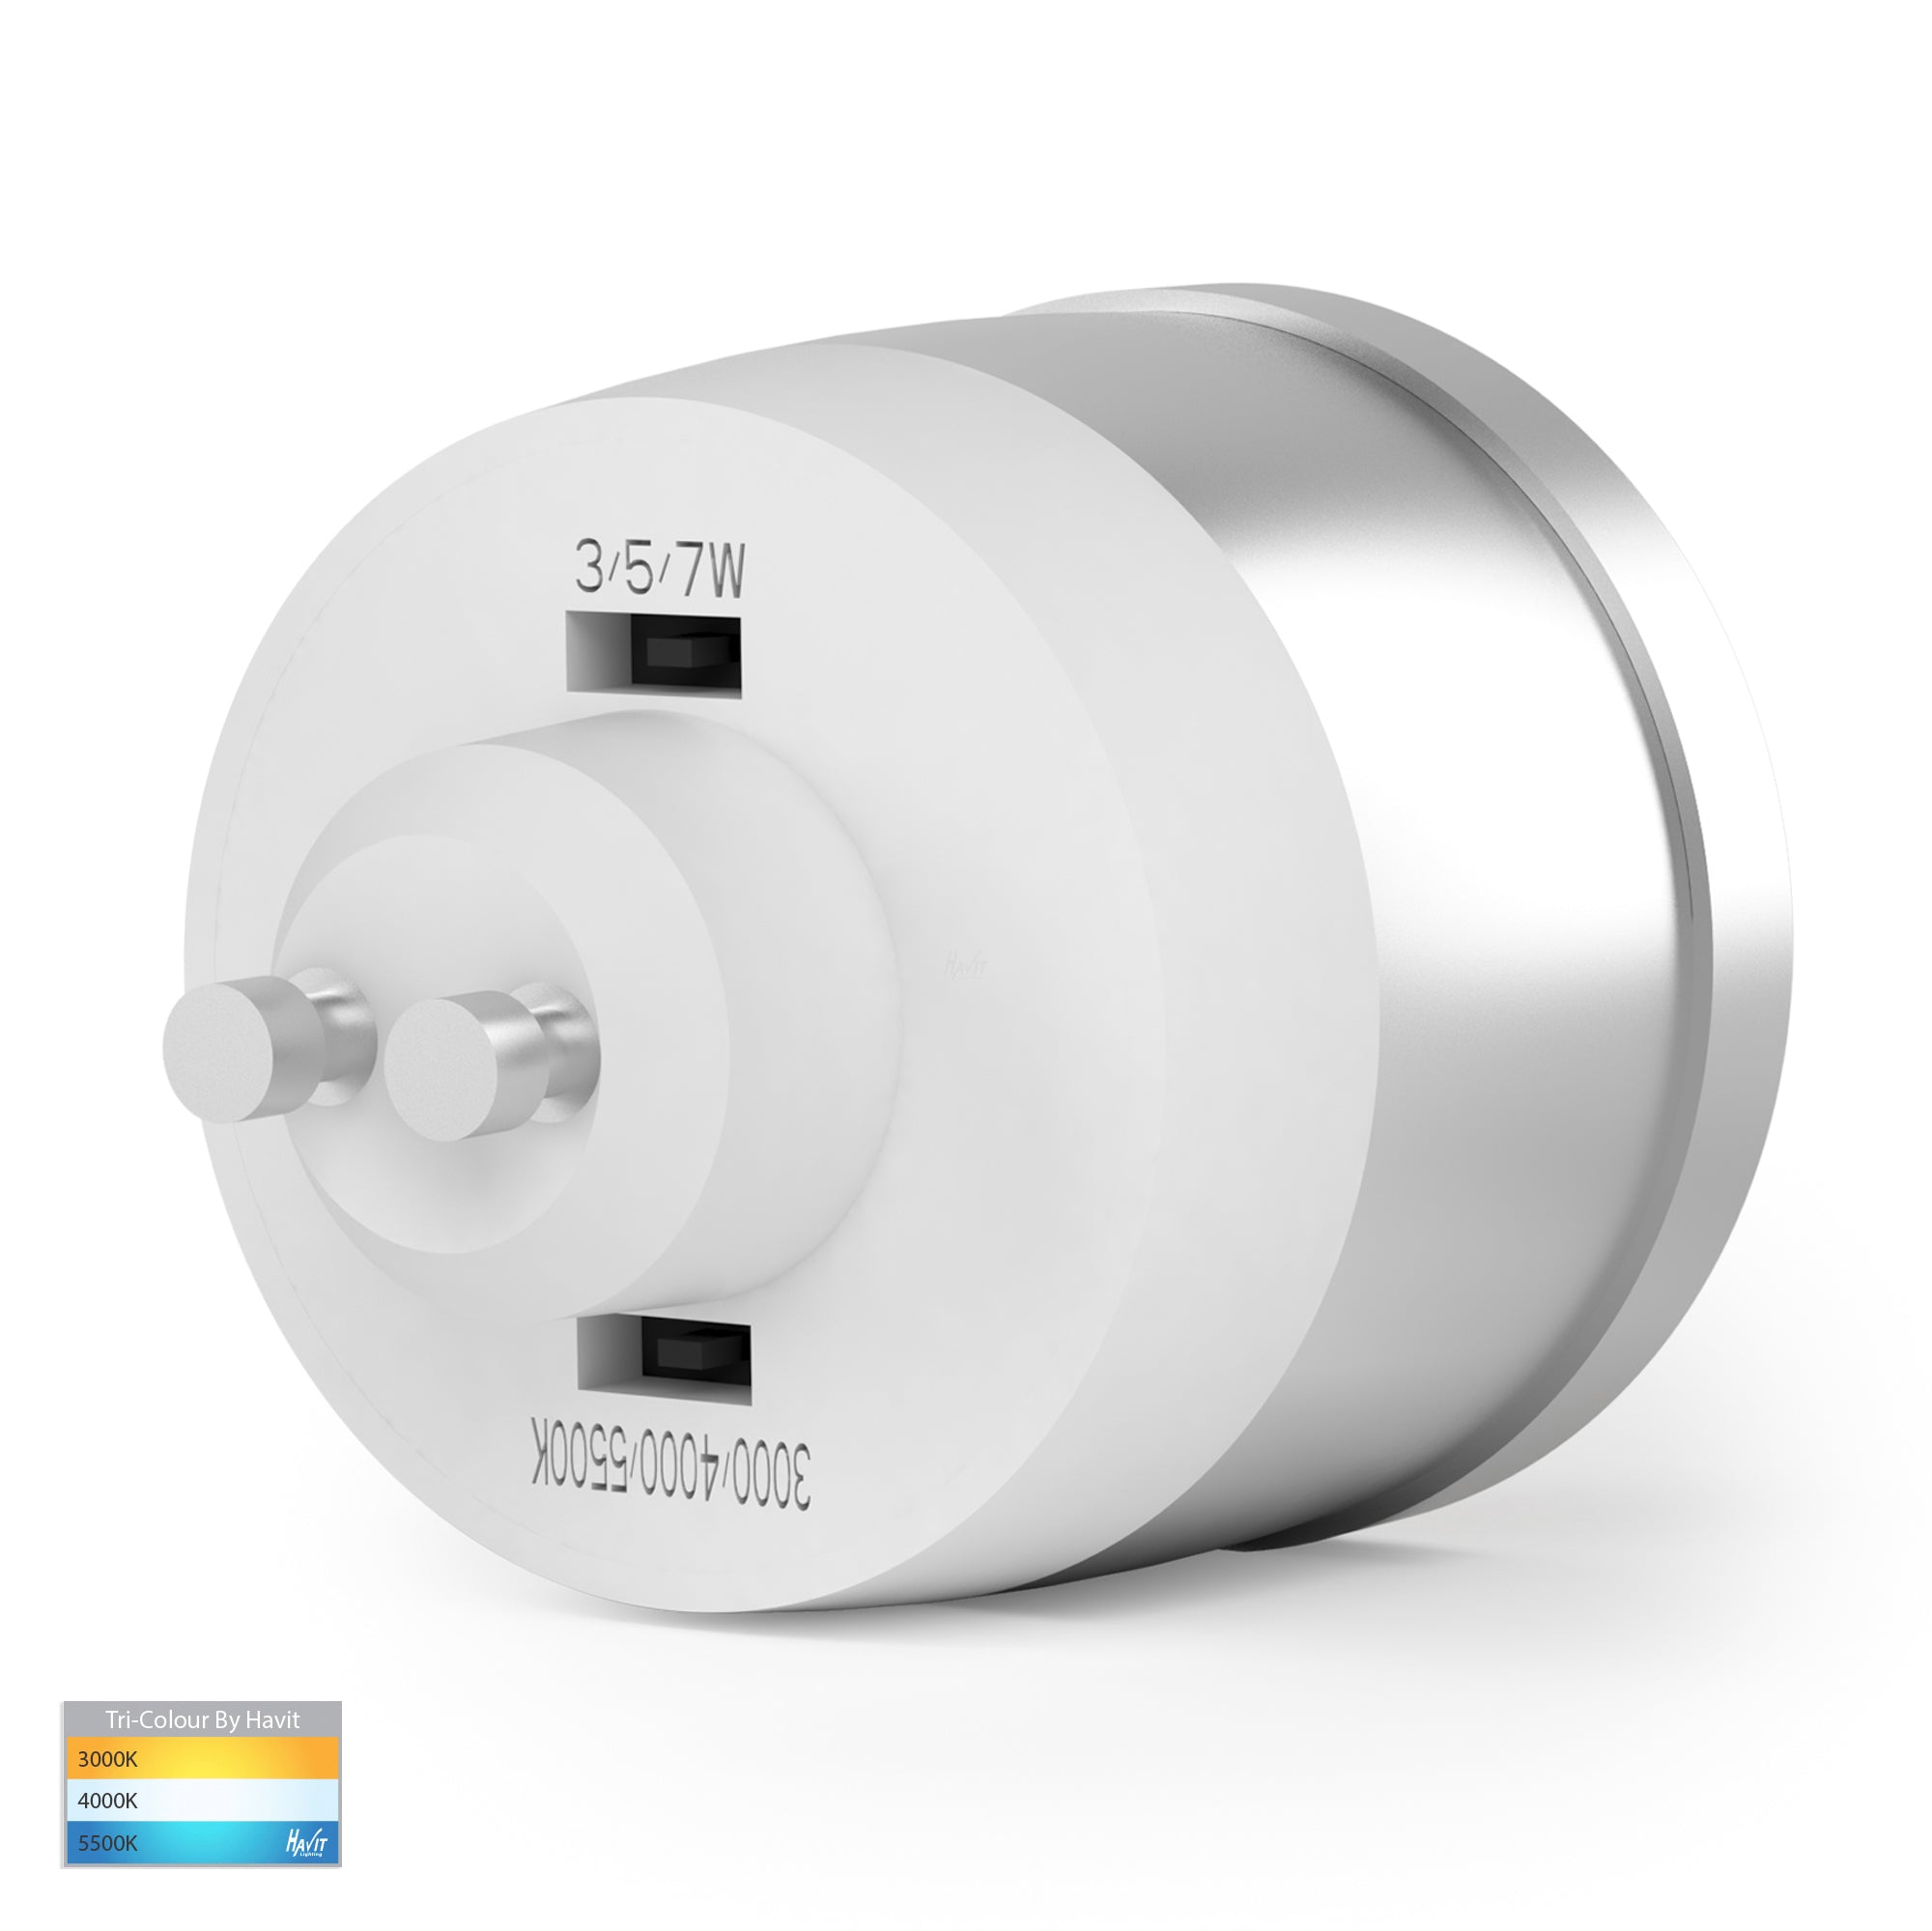 9in1 GU10 Globe Havit – Dimmable LED Lighting 240v HV9506D - Colour TRI-